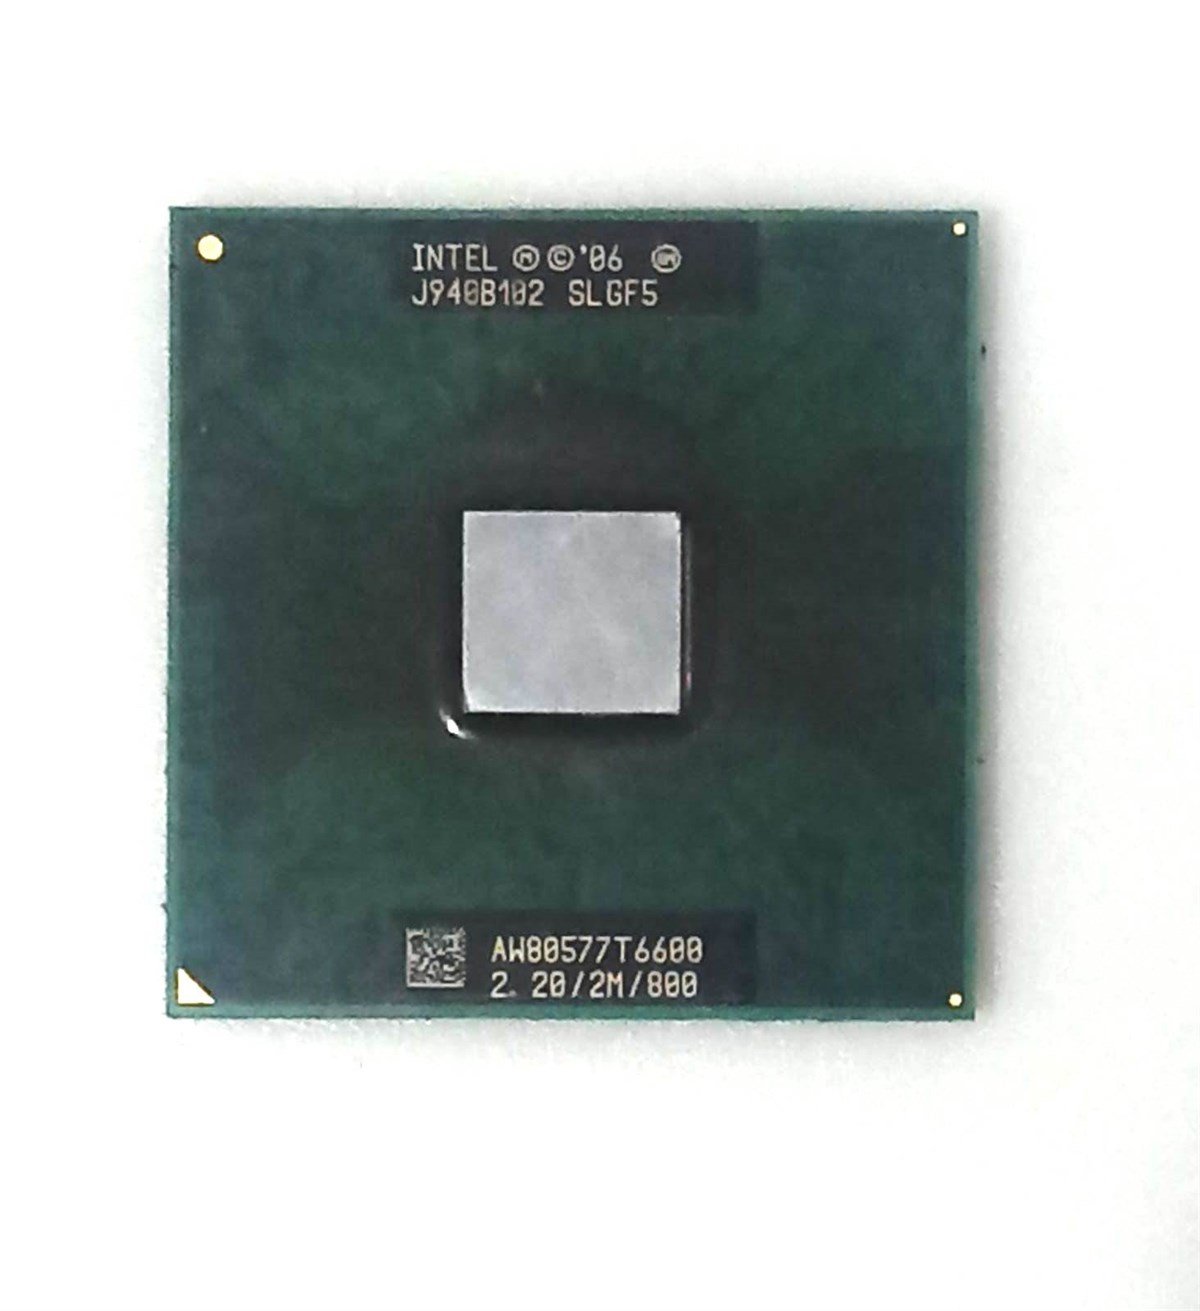 Intel Core 2 Duo mobil T6600 SLGF5 2.2 GHz çift çekirdekli çift dişli CPU  işlemci 2M 35W soket P STOK-İŞKUTU